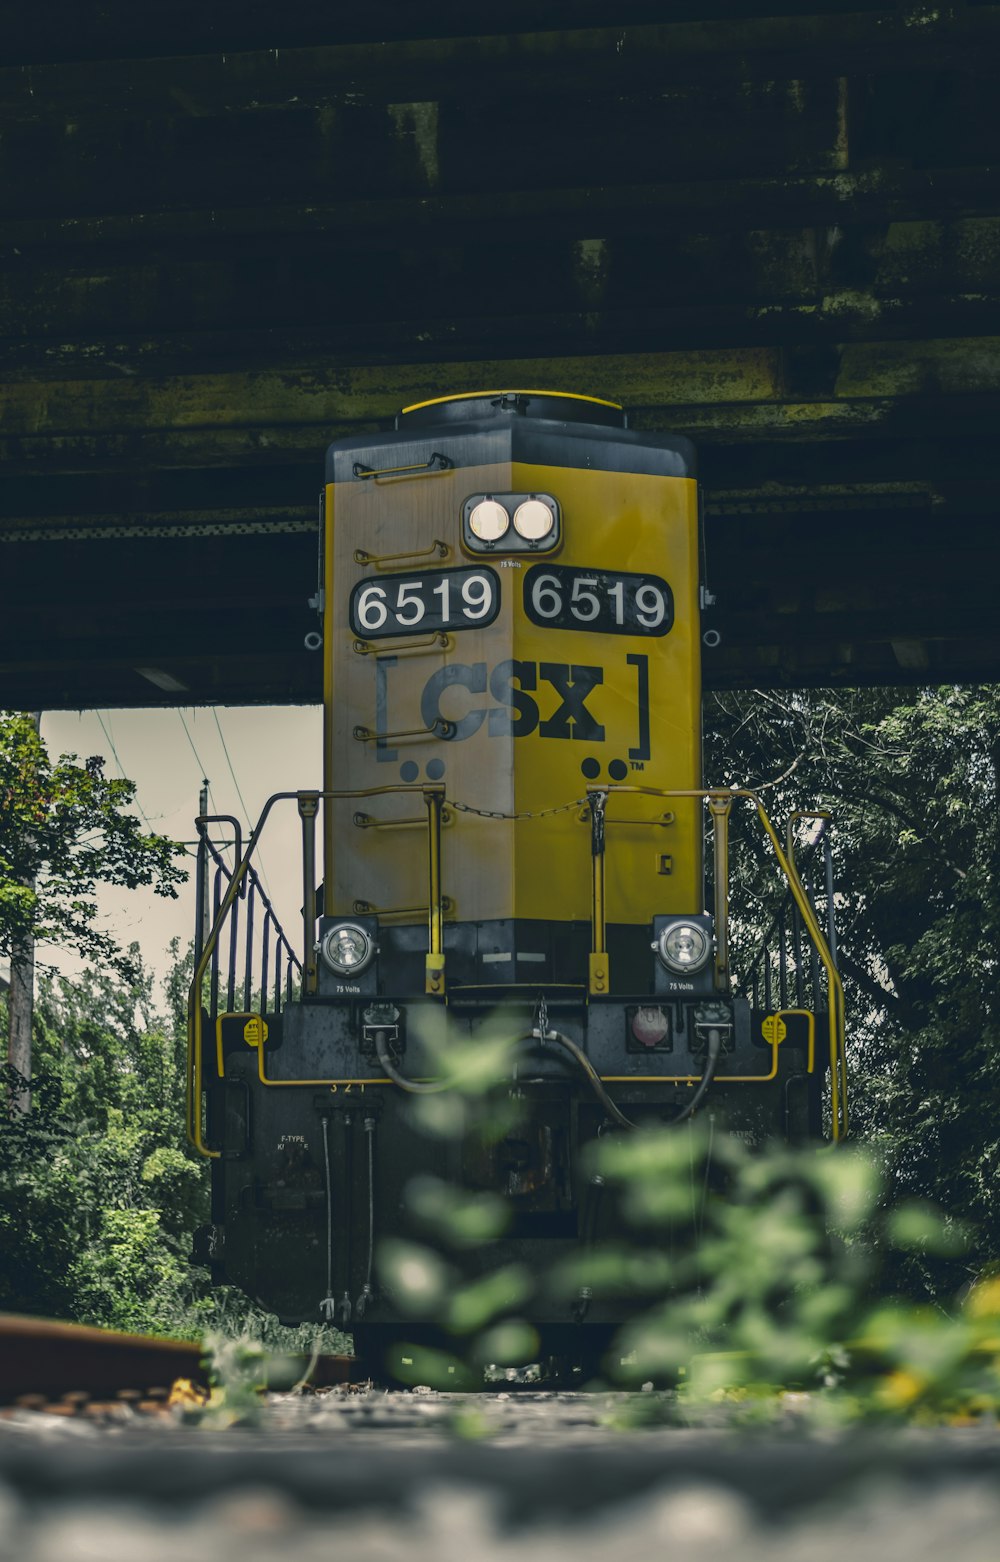 Fotografia filtrada do trem locomotiva amarelo e preto